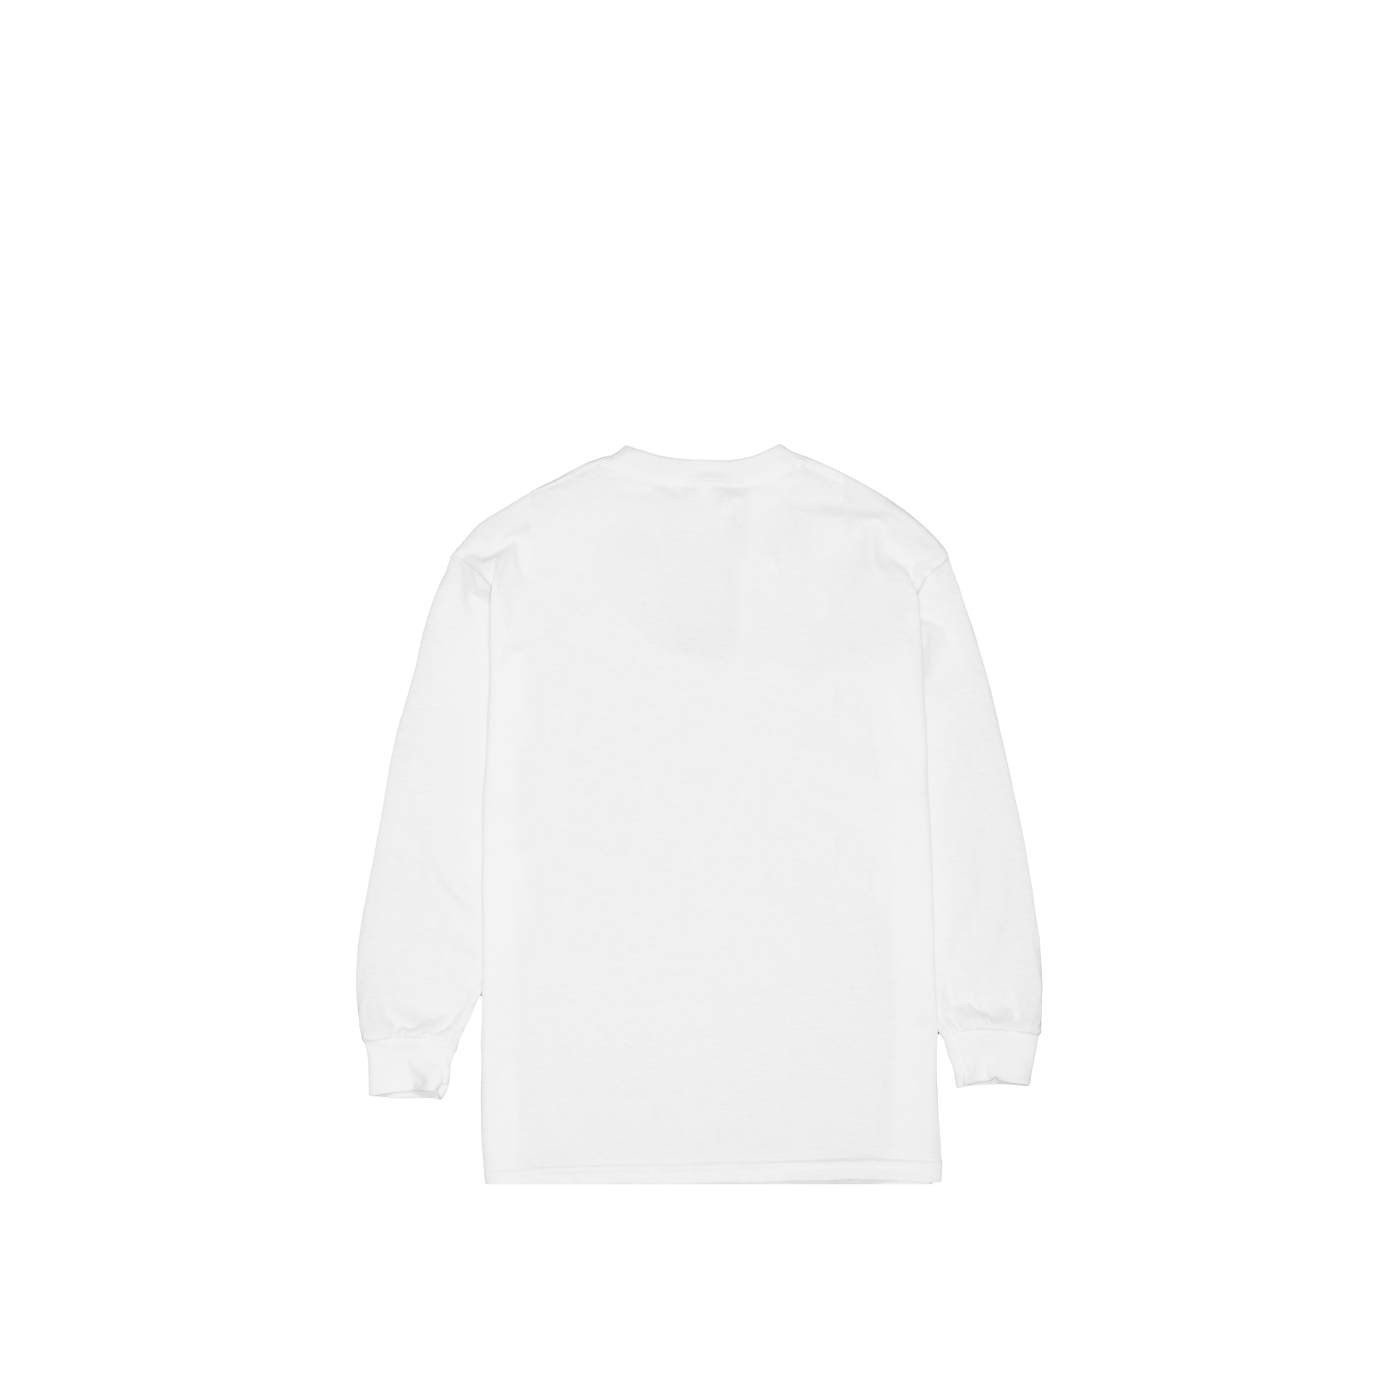 Marshmello Smile L/S Shirt (Youth) — White